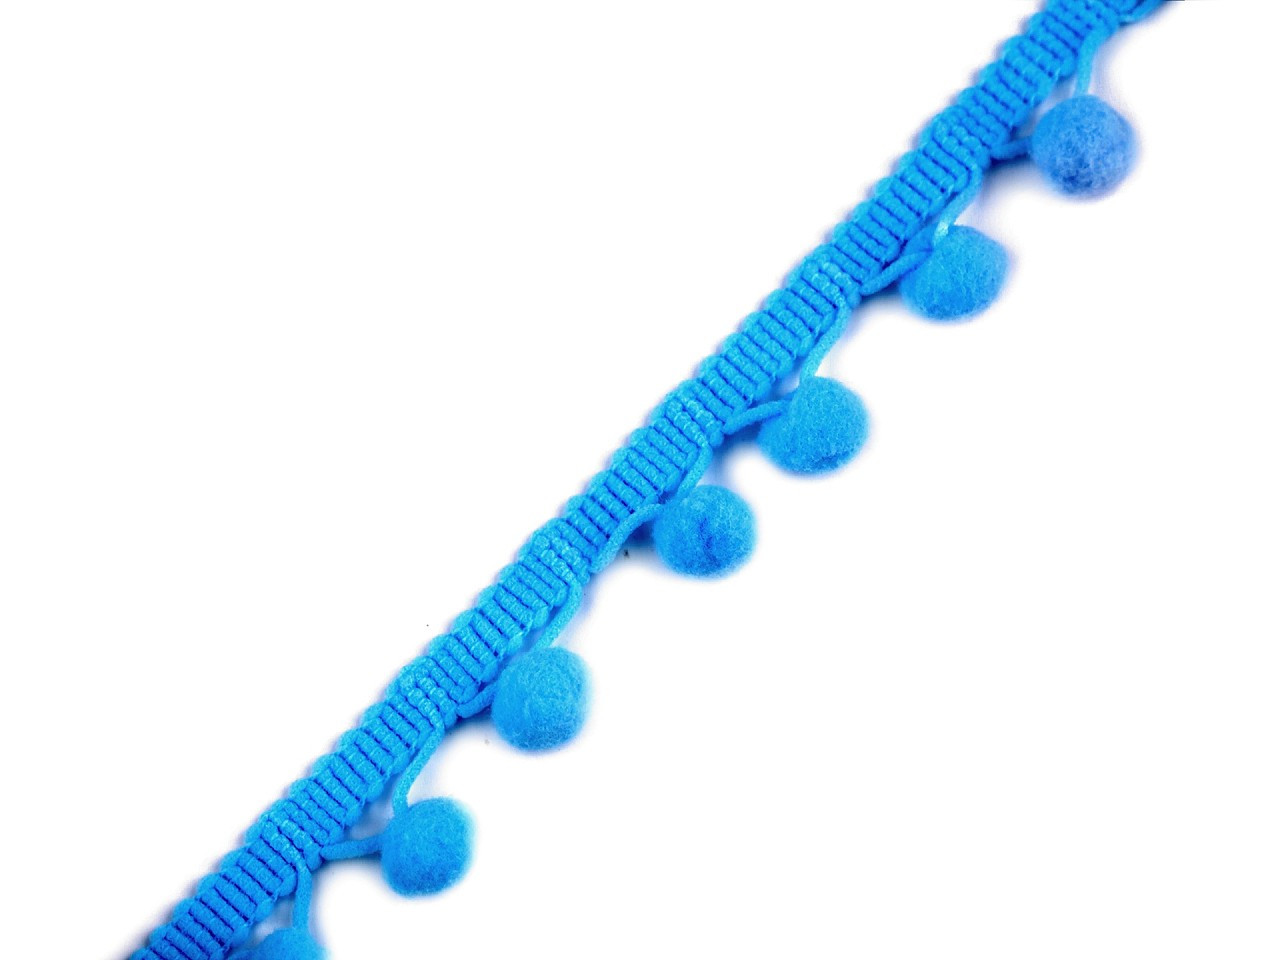 Prýmek šíře 20 mm s bambulkami Ø10 mm, barva 43 modrá dětská